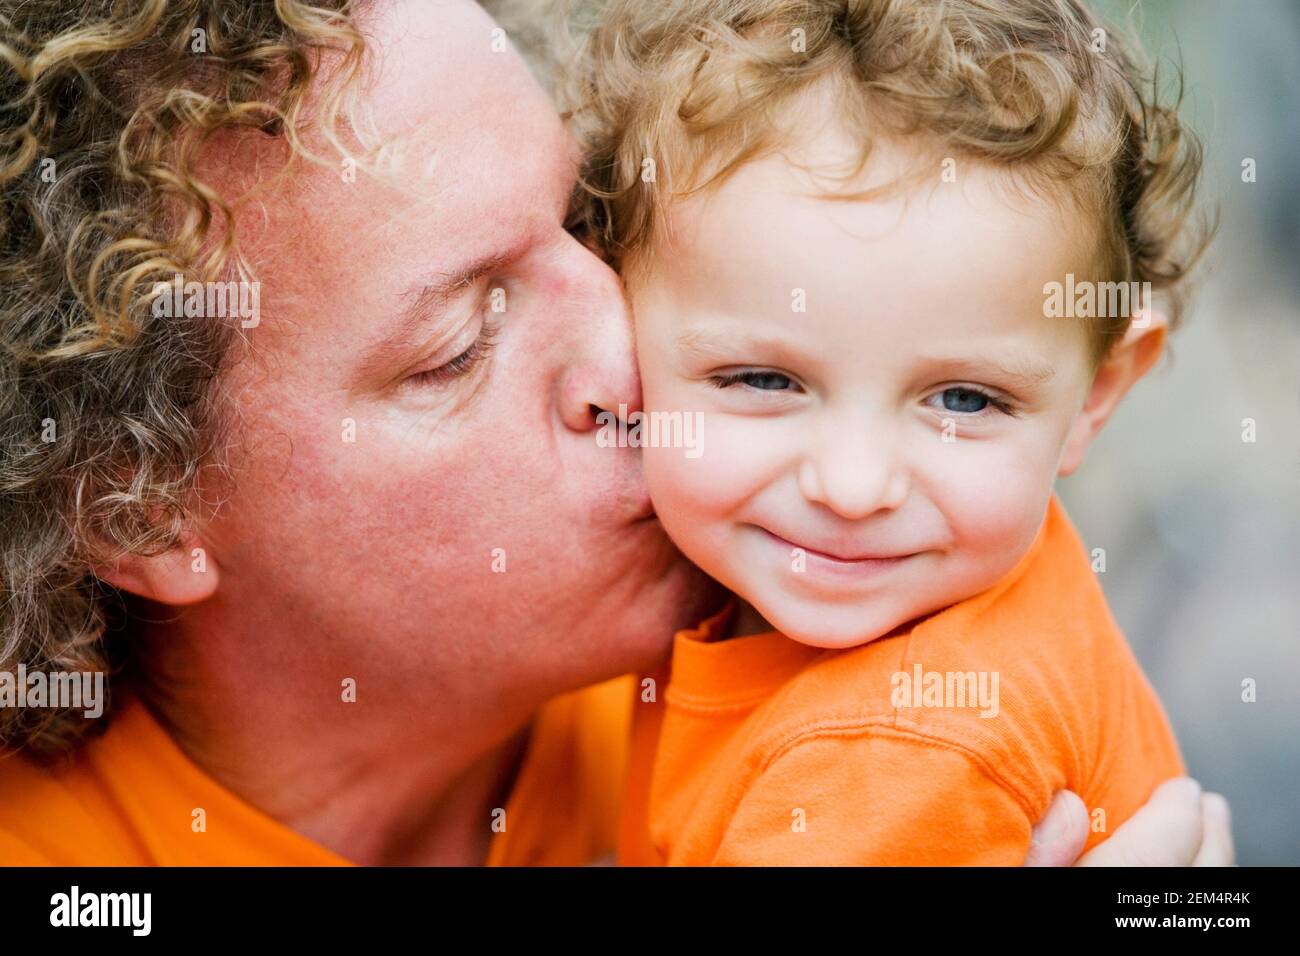 Nahaufnahme eines reifen Mannes, der seinen Sohn küsst Stockfoto